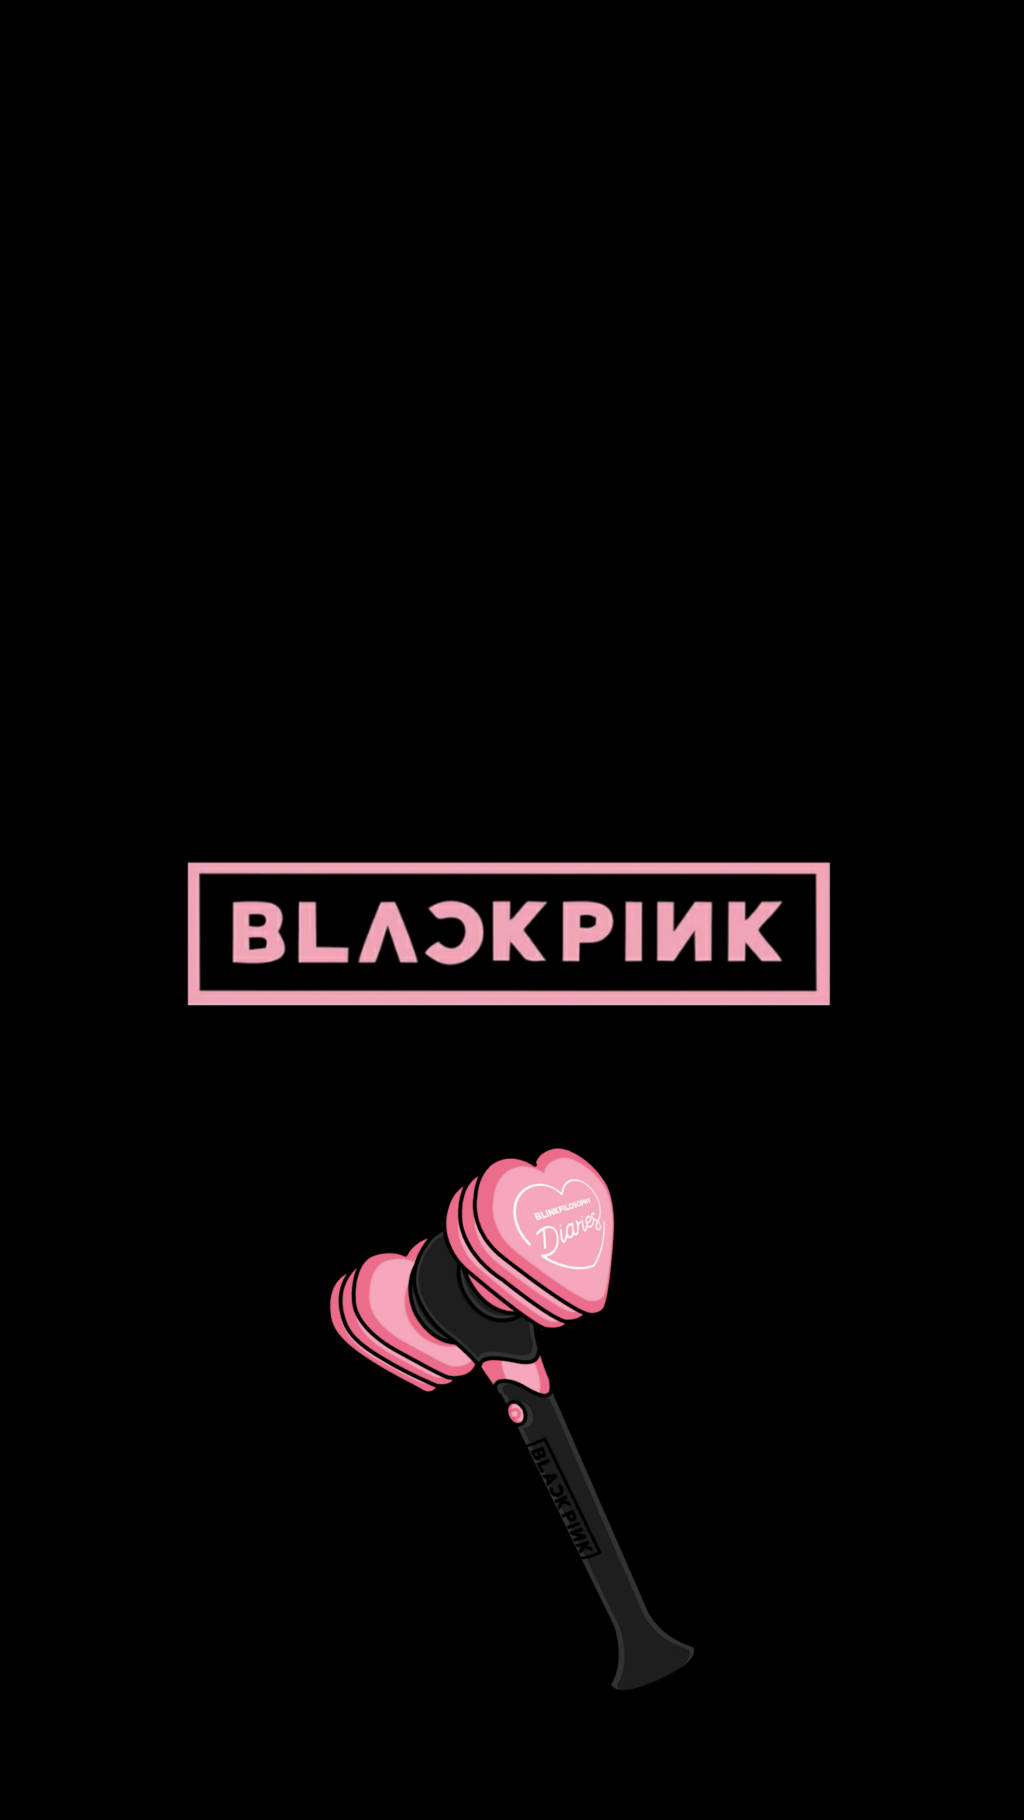 Blackpink Logo With Bi Ping Bong